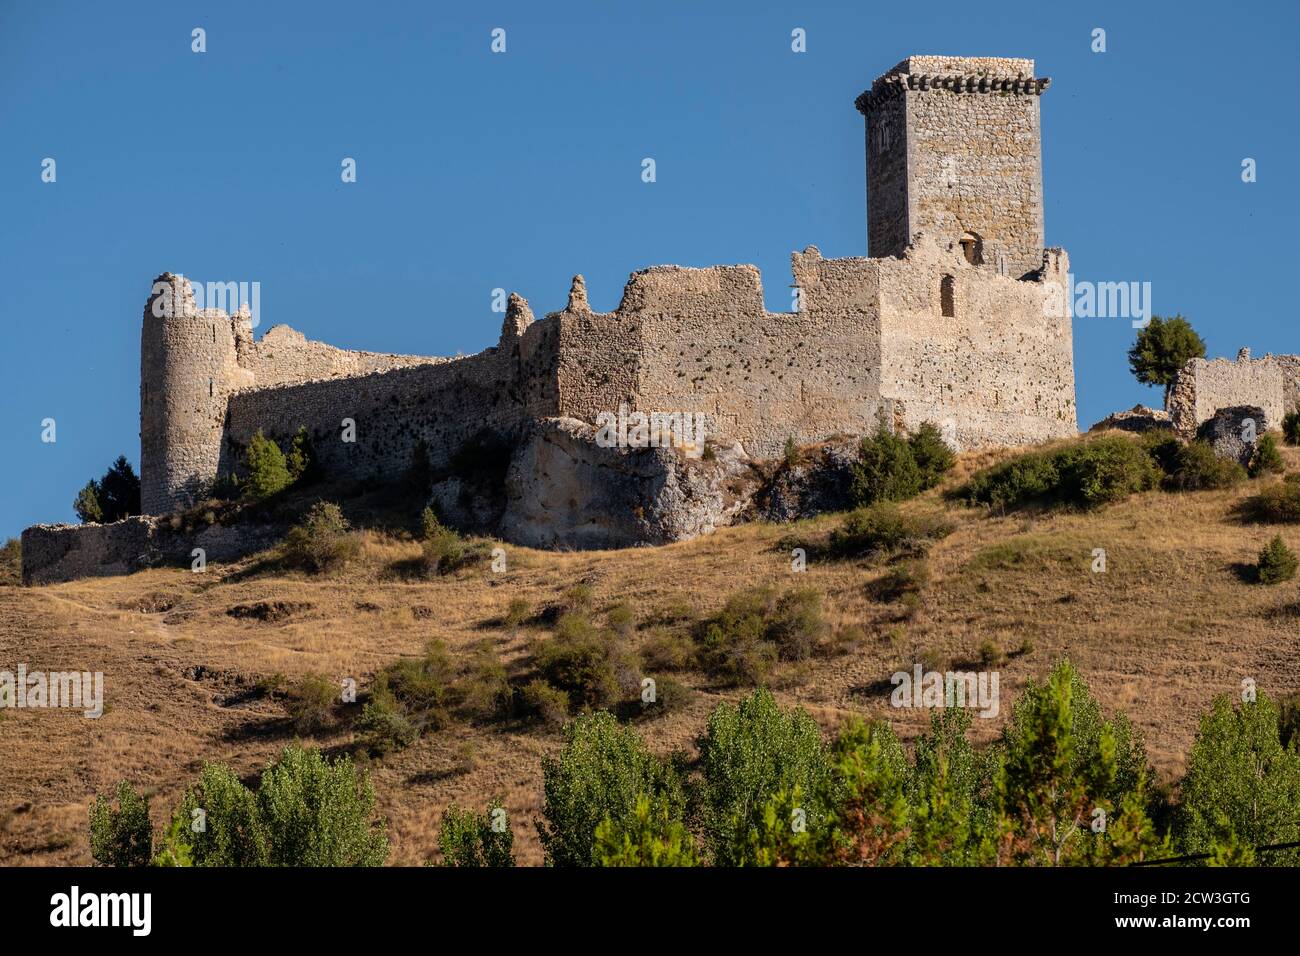 Castillo de Ucero, perteneció a la orden del Temple, Siglos XIII y XIV, Soria, Comunidad Autónoma de Castilla, Spain, Europe Stock Photo